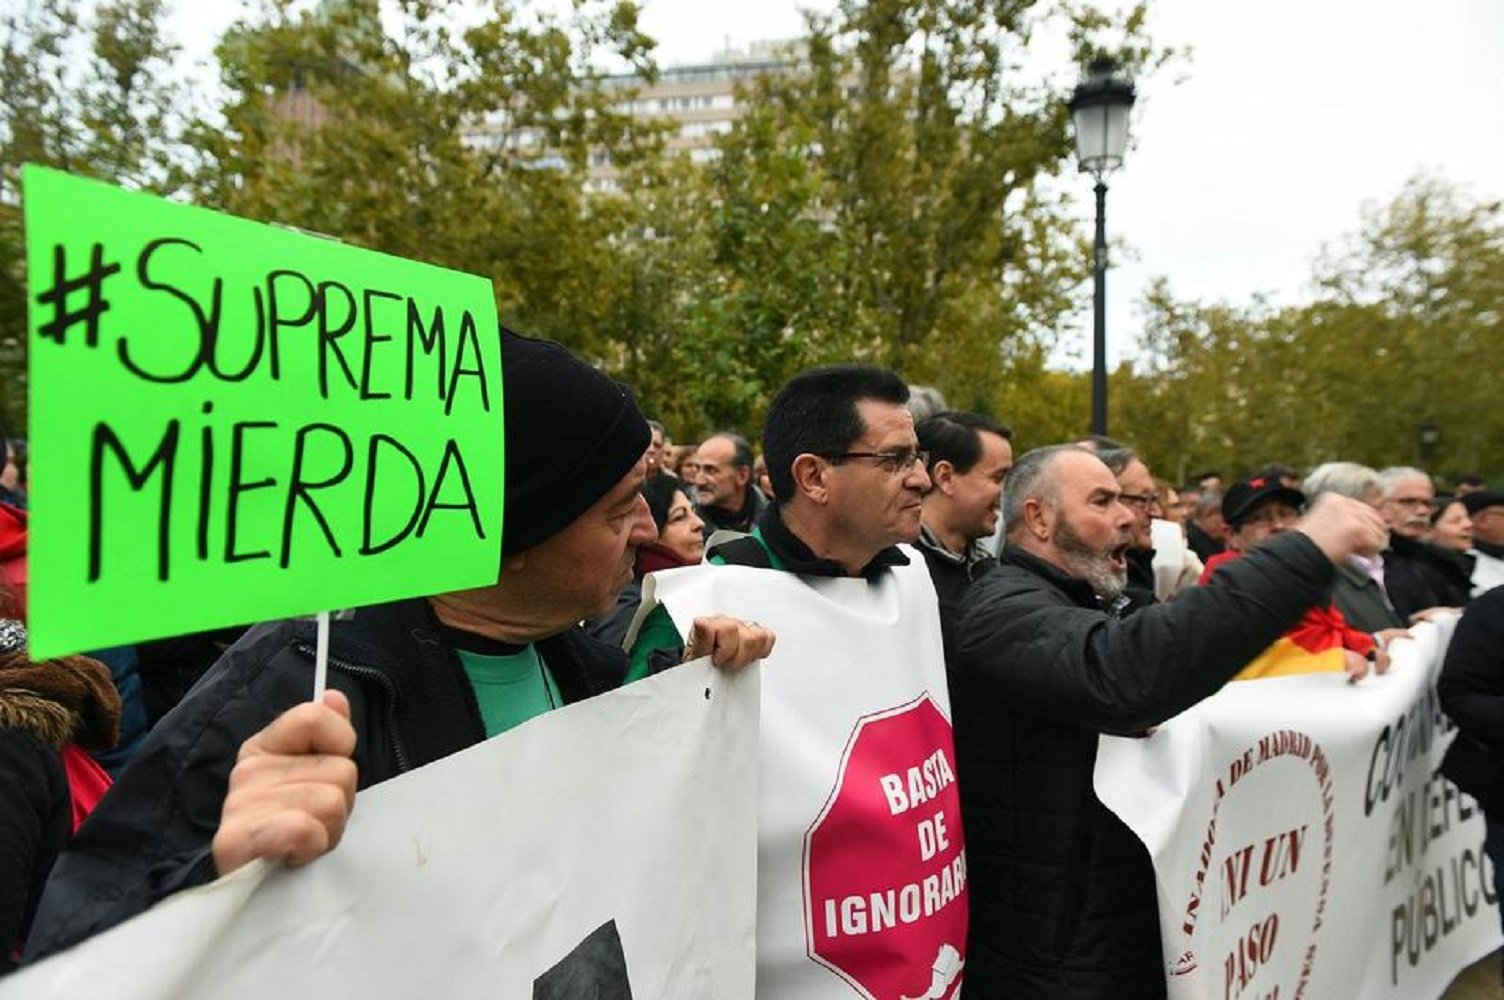 Cien organizaciones de todo el Estado denunciarán en Madrid que "no hay justicia"